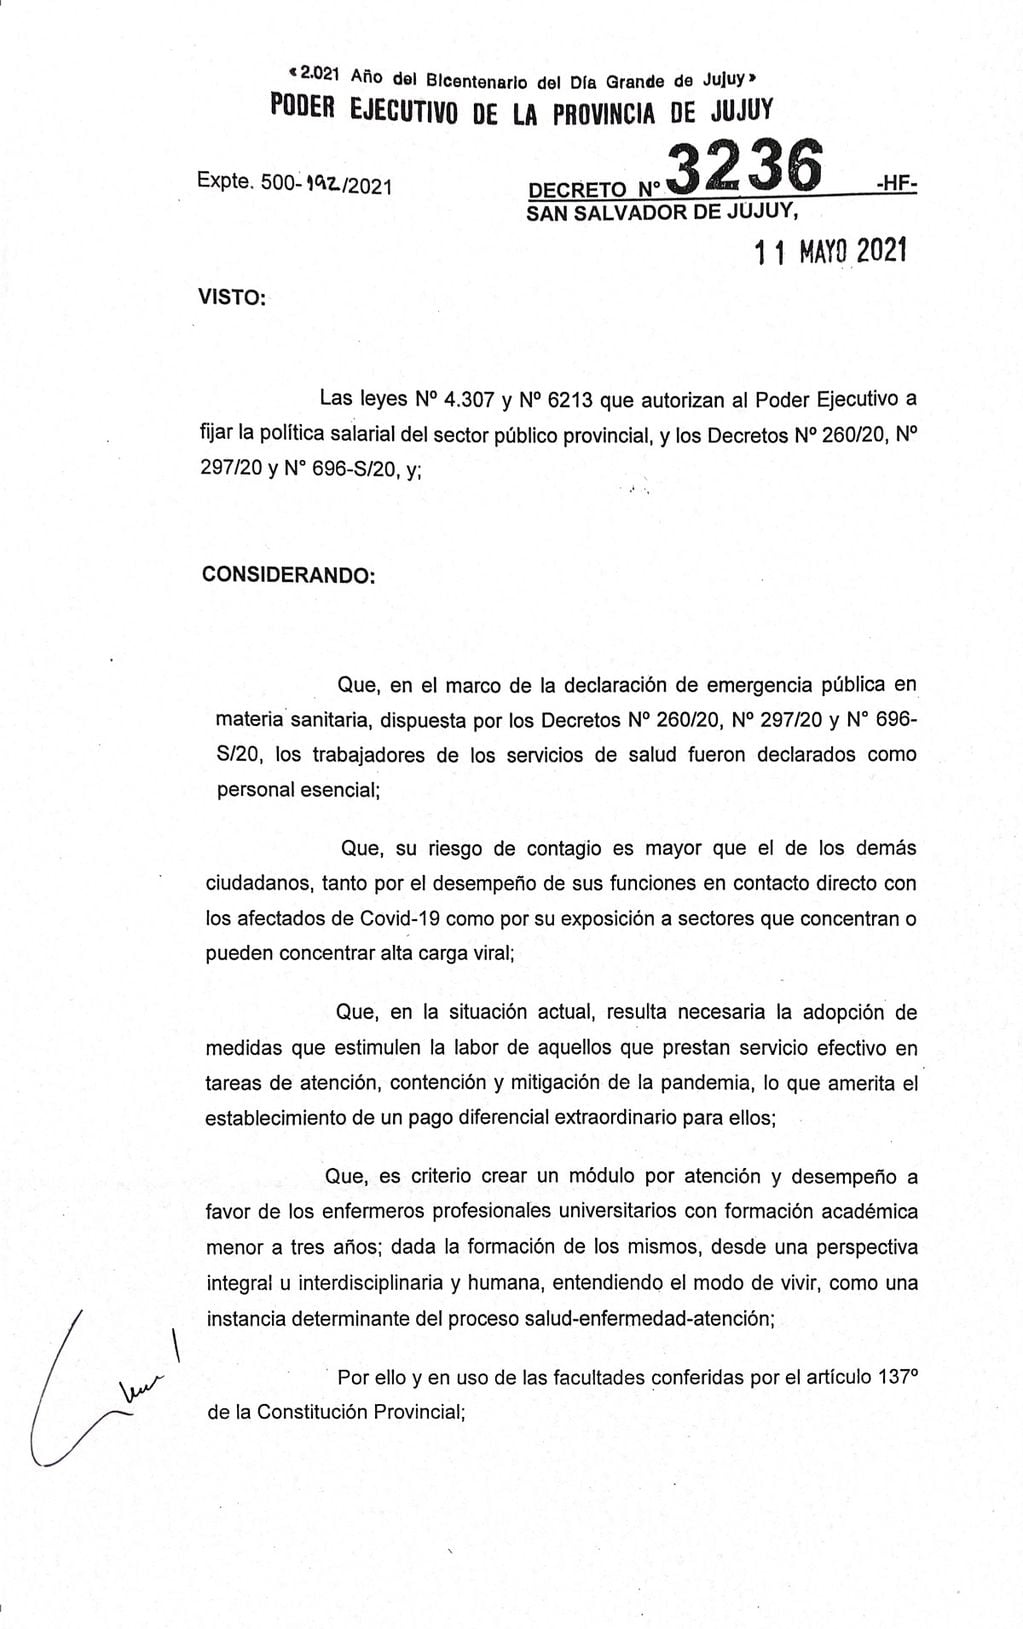 El decreto N° 3236-HF que implementa el "Módulo por Atención y Desempeño" para el personal de enfermería de Jujuy.